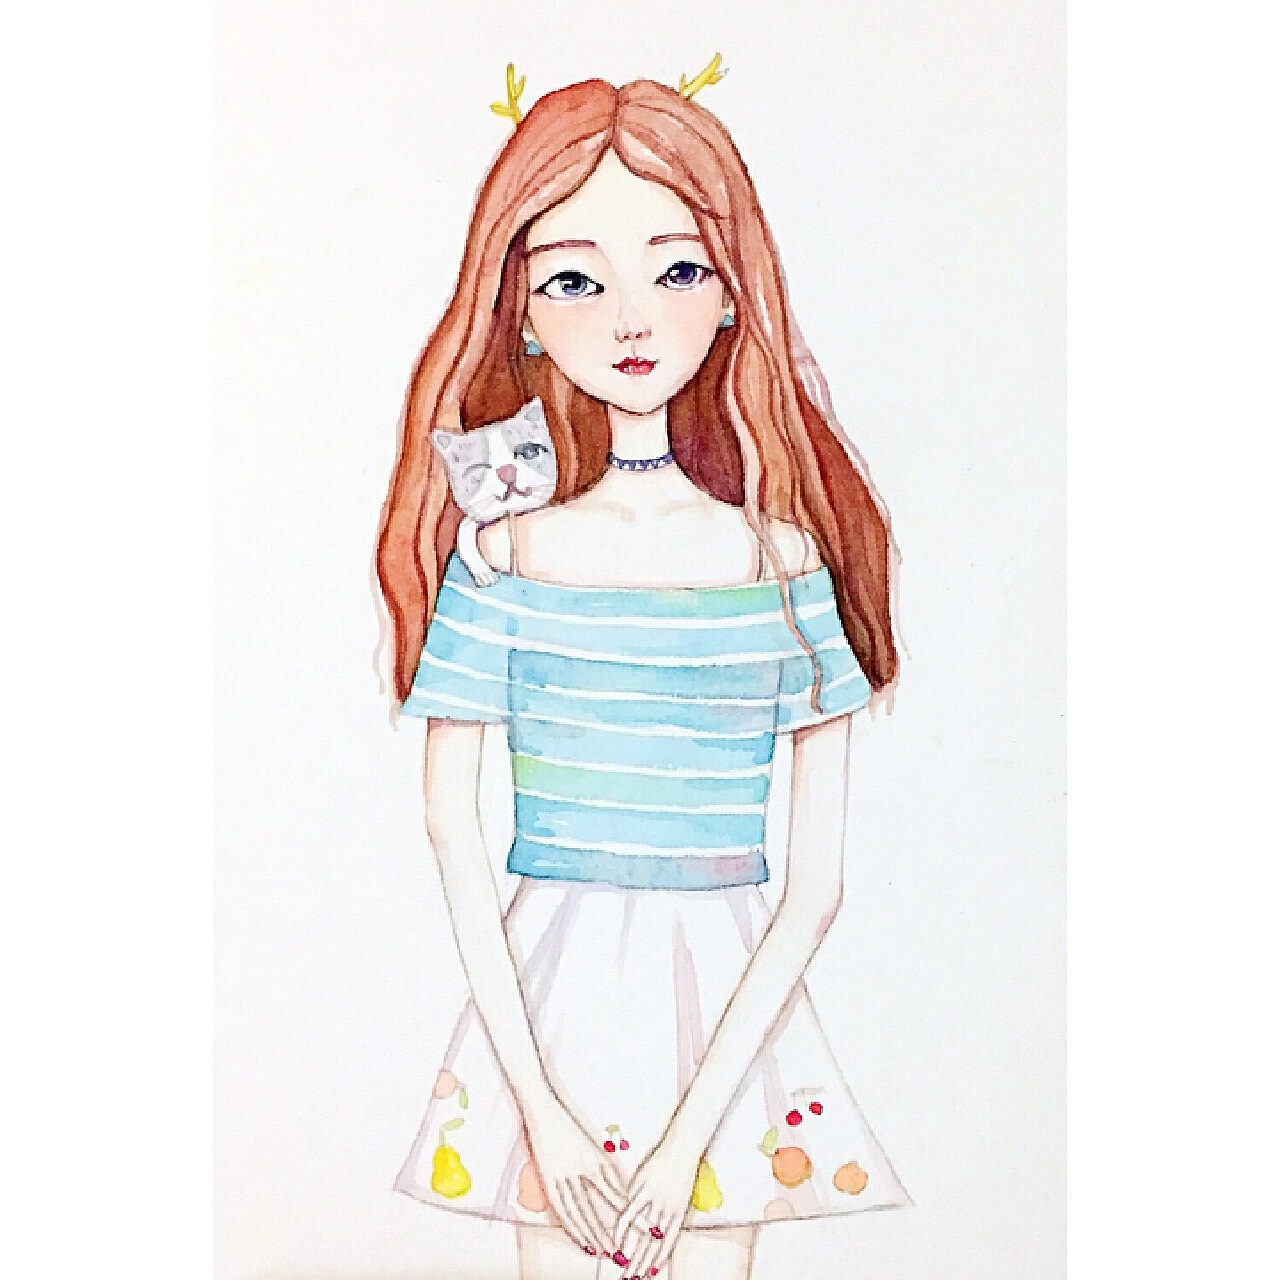 少女心背景图 | 迪士尼公主 - 高清图片，堆糖，美图壁纸兴趣社区